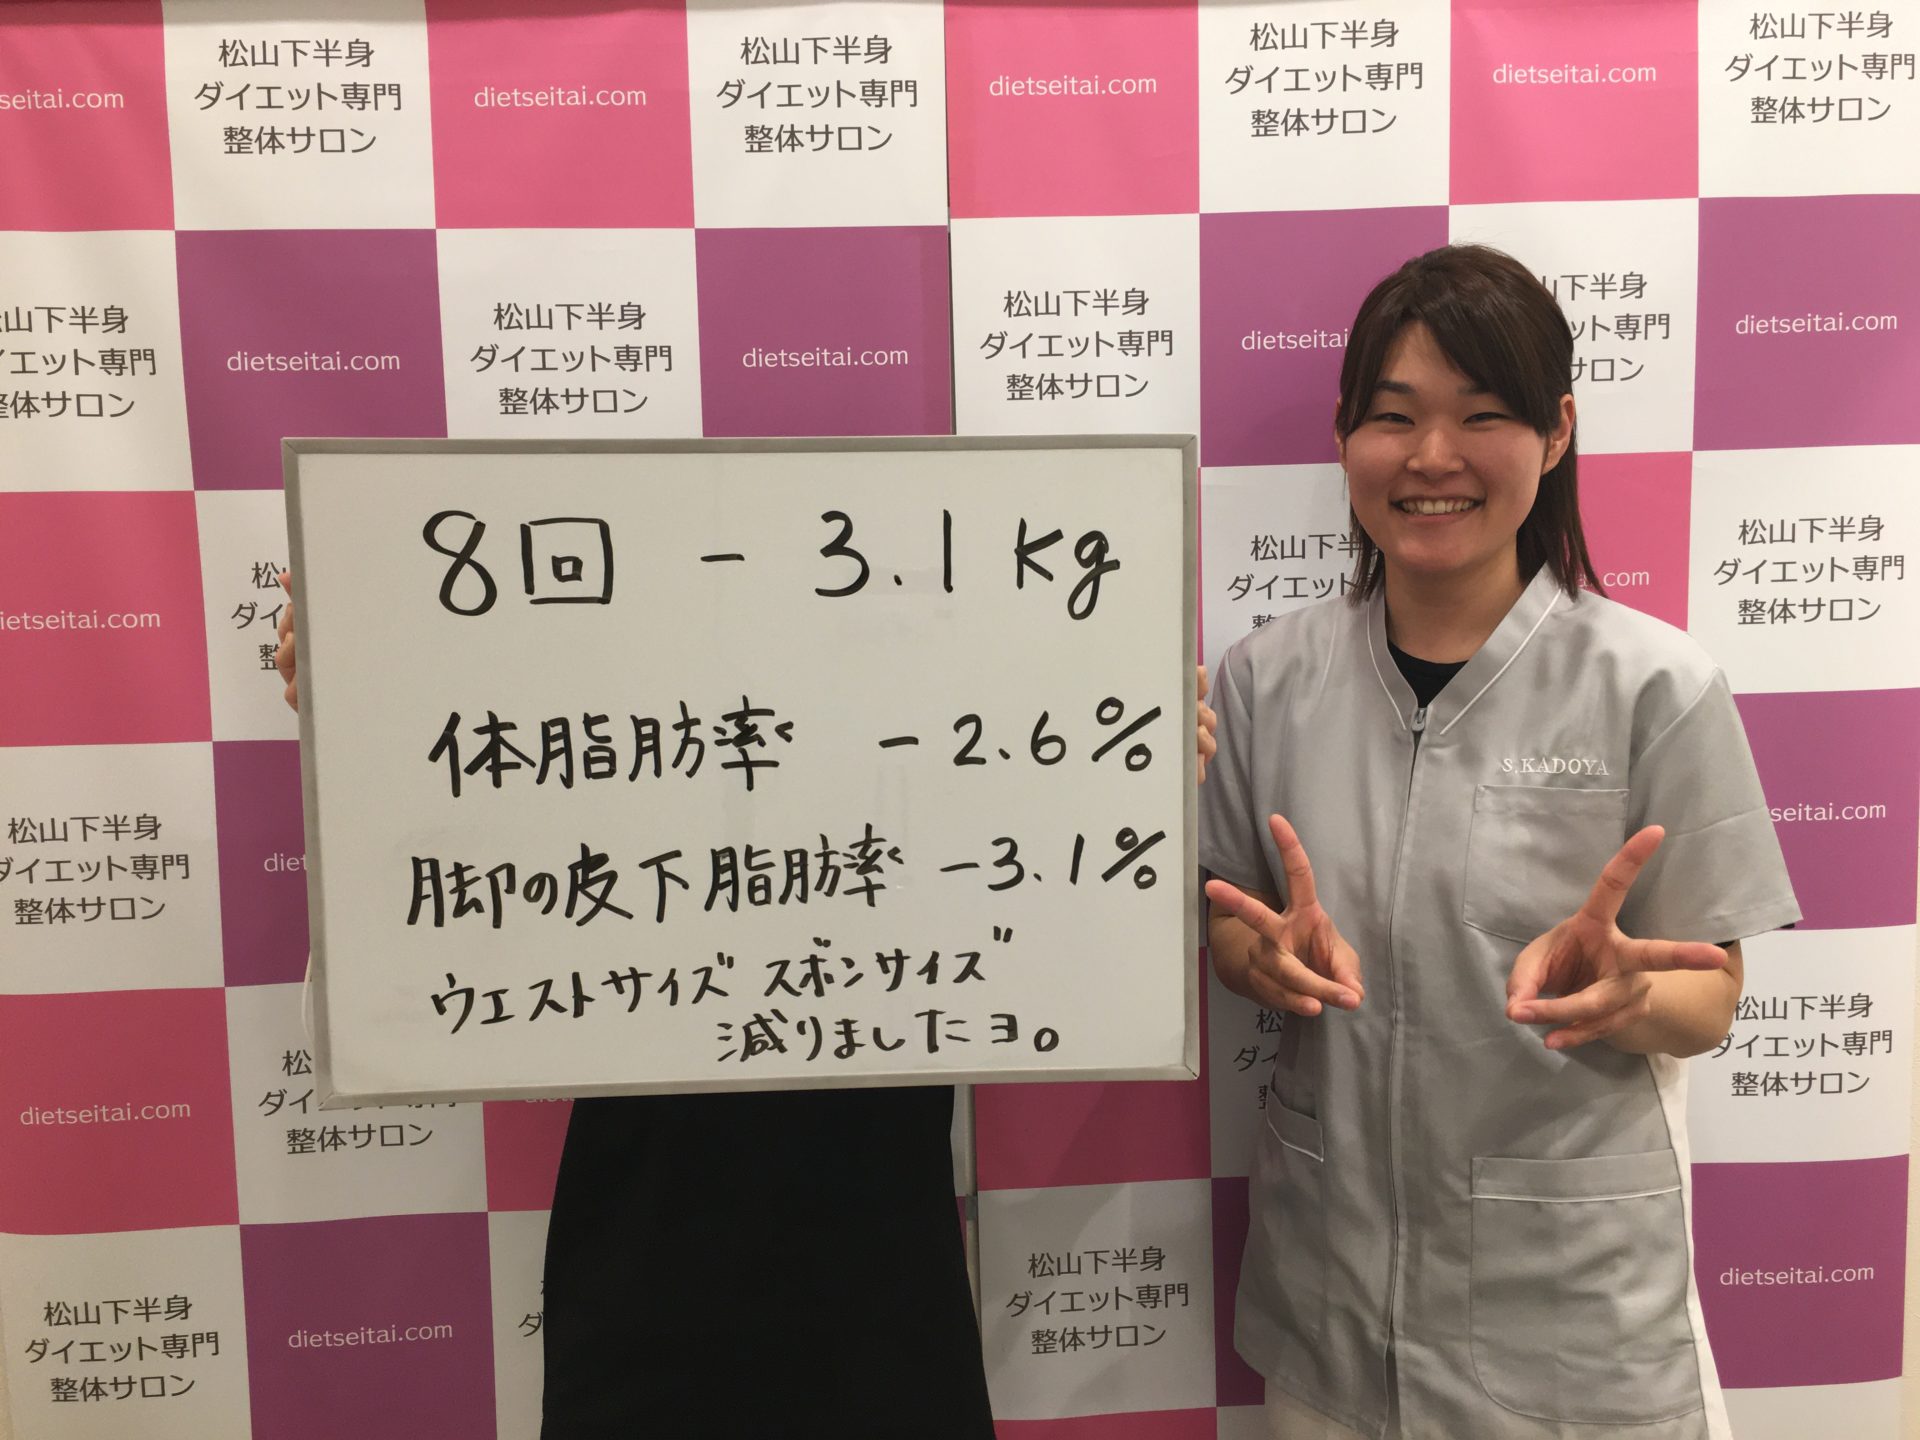 「自分の体型の変化を感じつつ、無事 8回終えることが できました。」松山市在住 47歳 Nさん 松山下半身ダイエット専門整体サロン